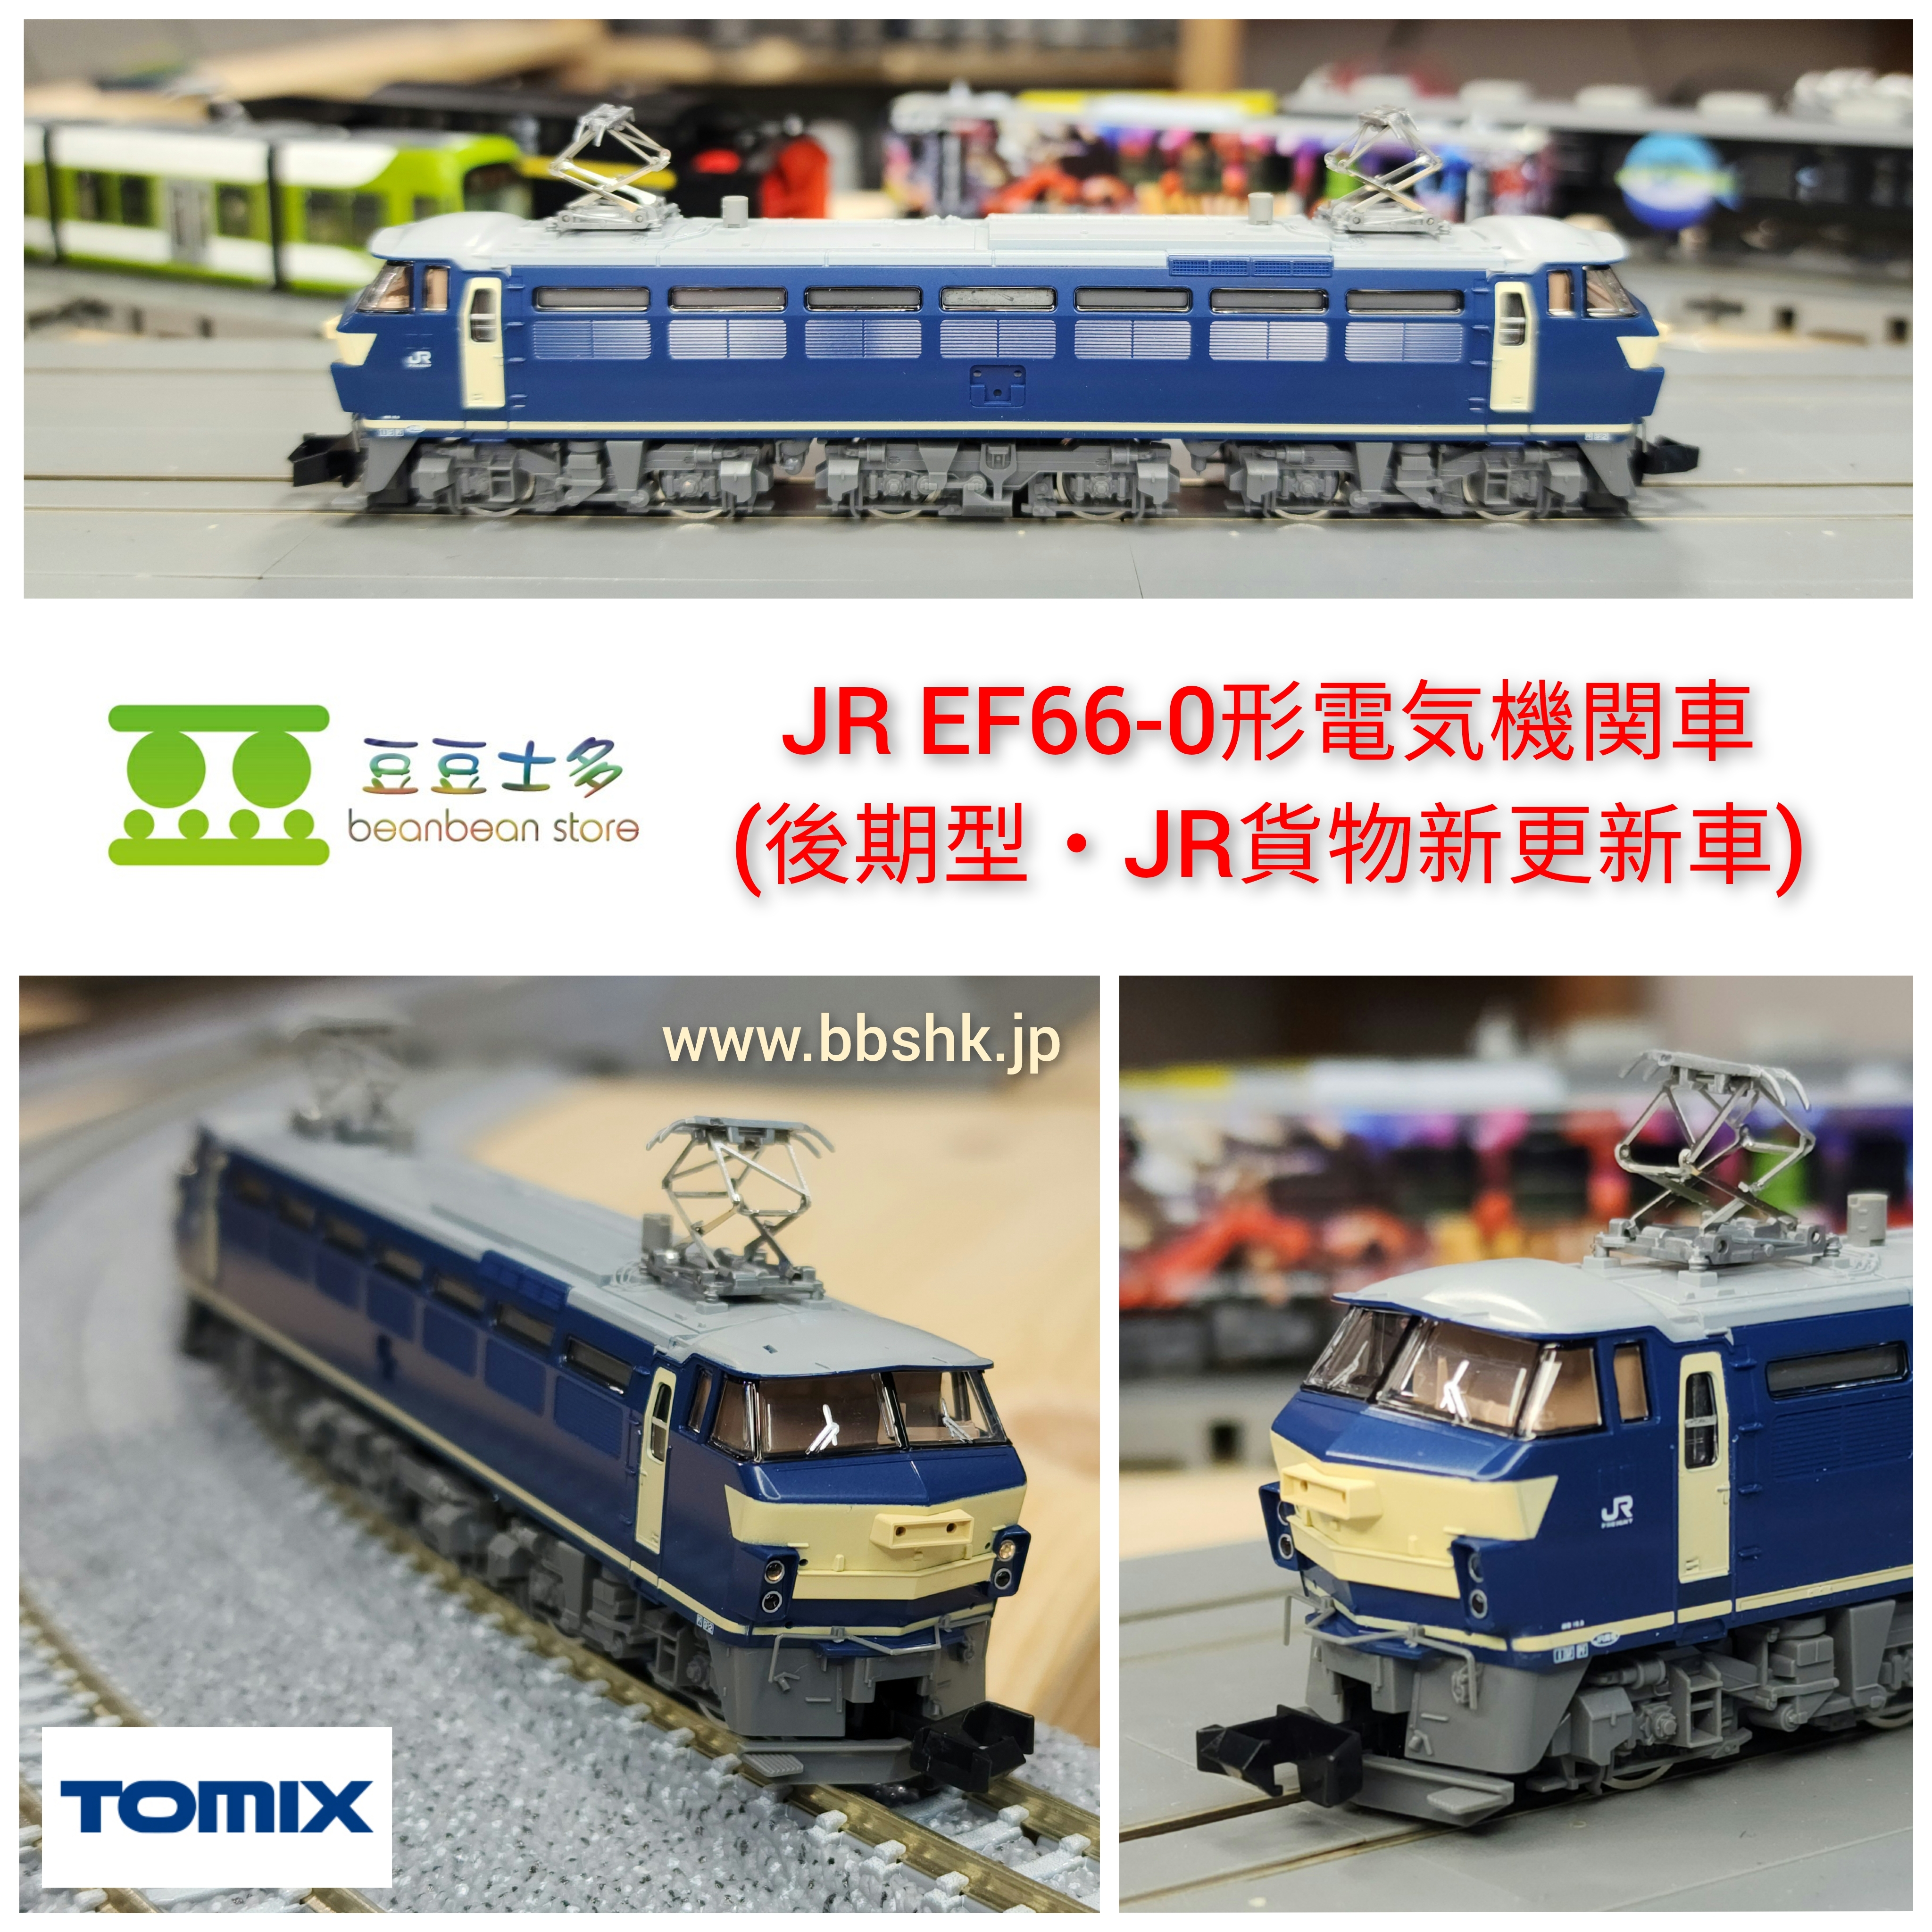 TOMIX 7160 JR EF66-0形 電気機関車 (後期型・JR貨物新更新車)